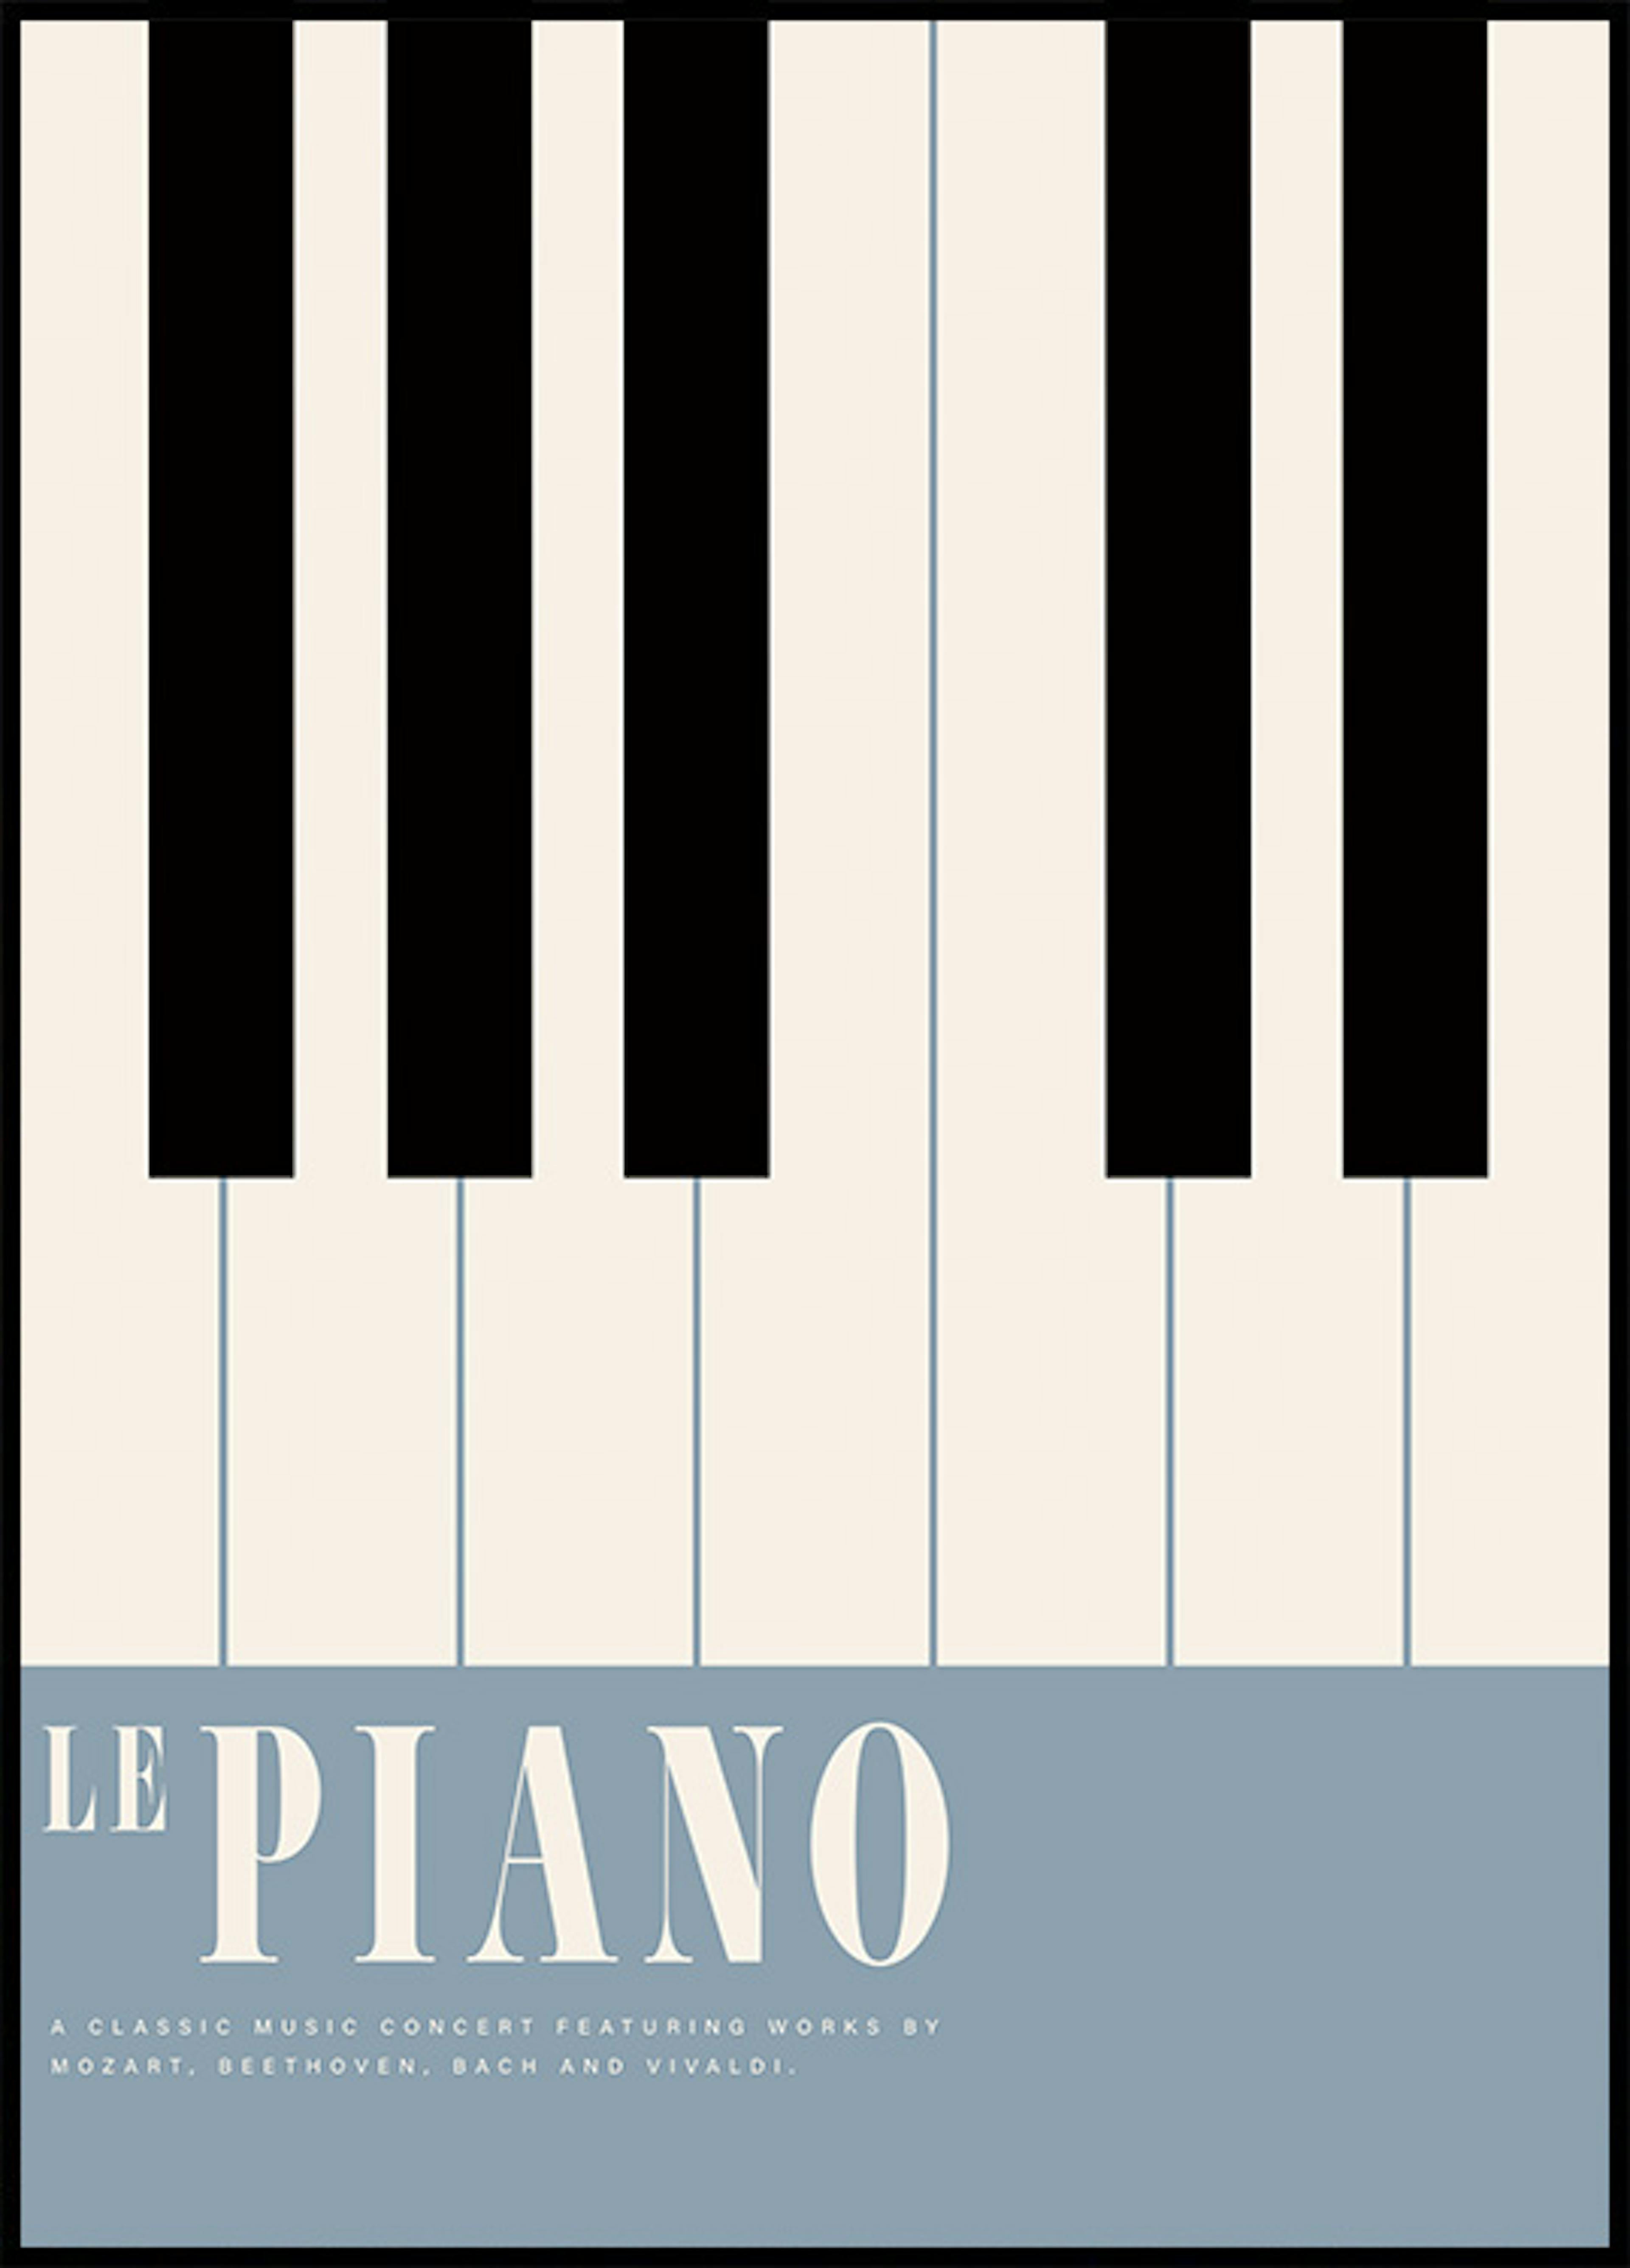 Le Piano plakát 0